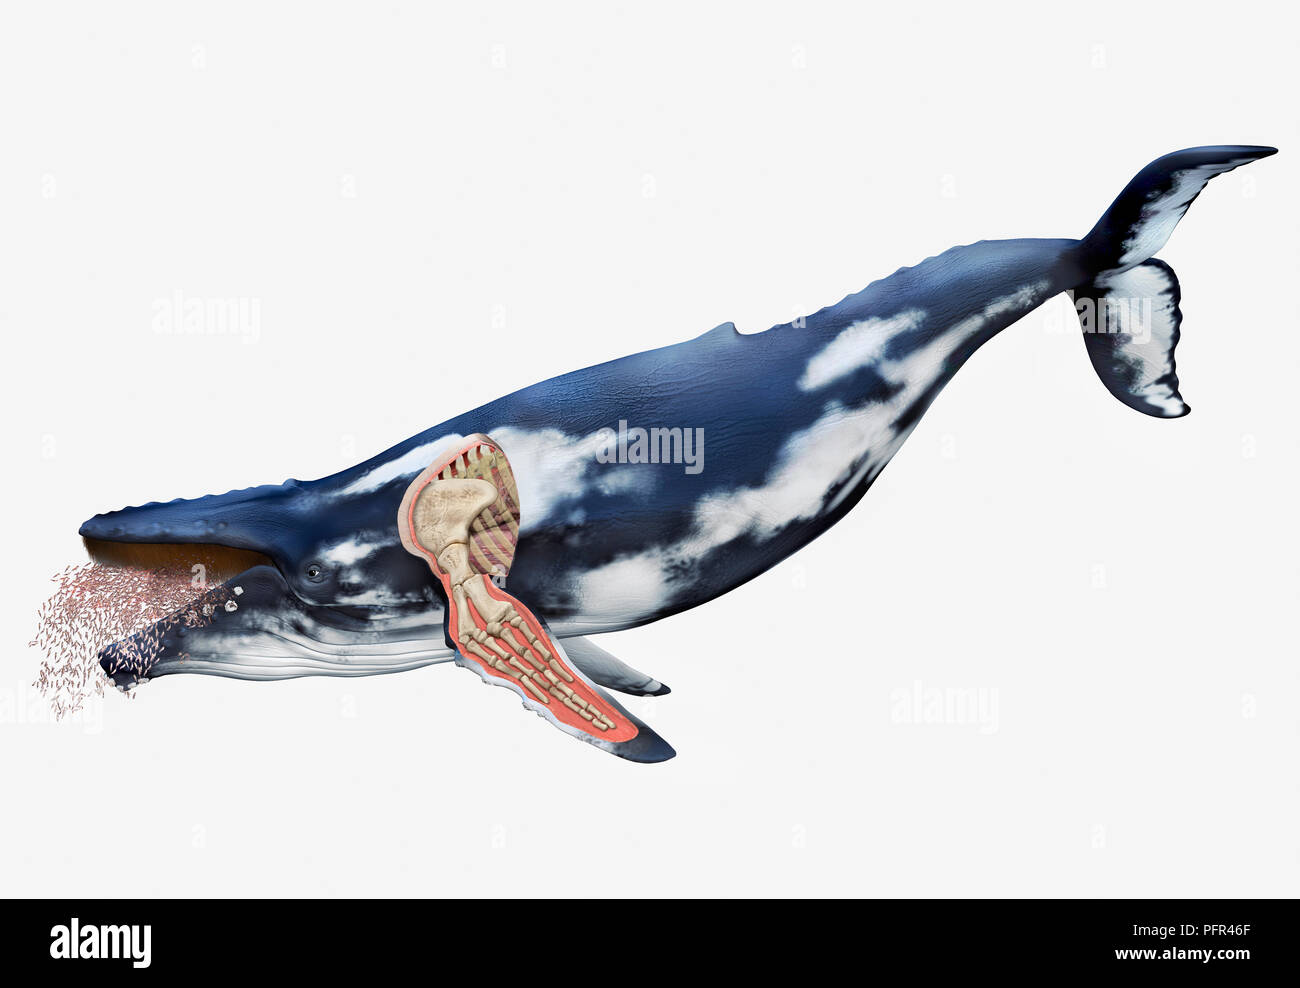 Illustration numérique de la structure de l'os de baleine avec des nageoires visible, la vue en coupe Banque D'Images